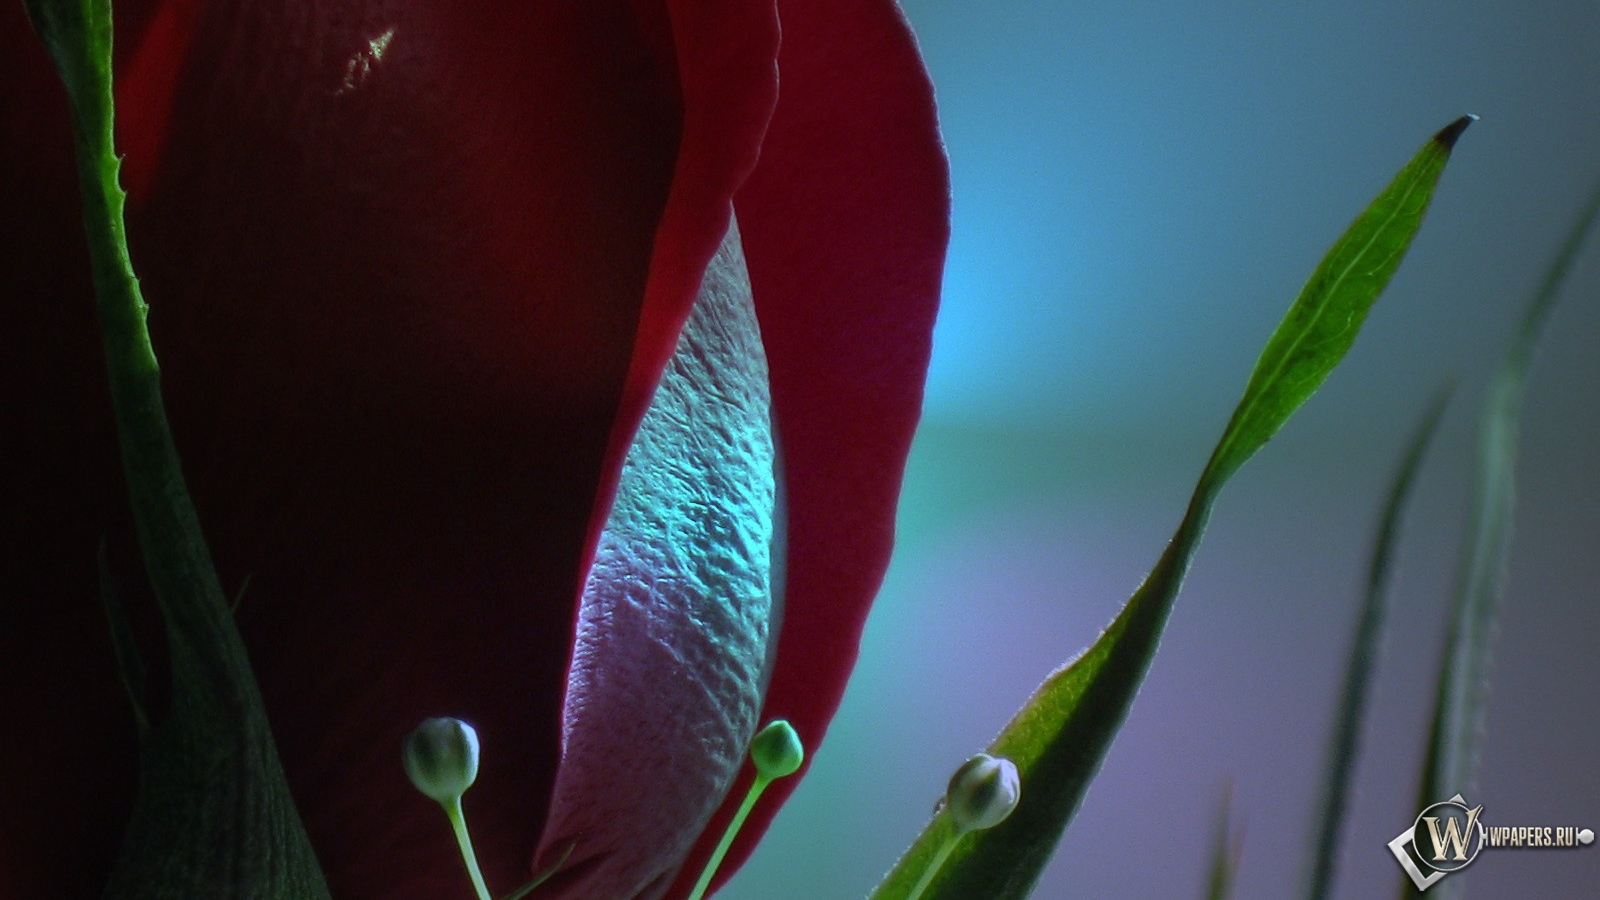 Красная роза 1600x900